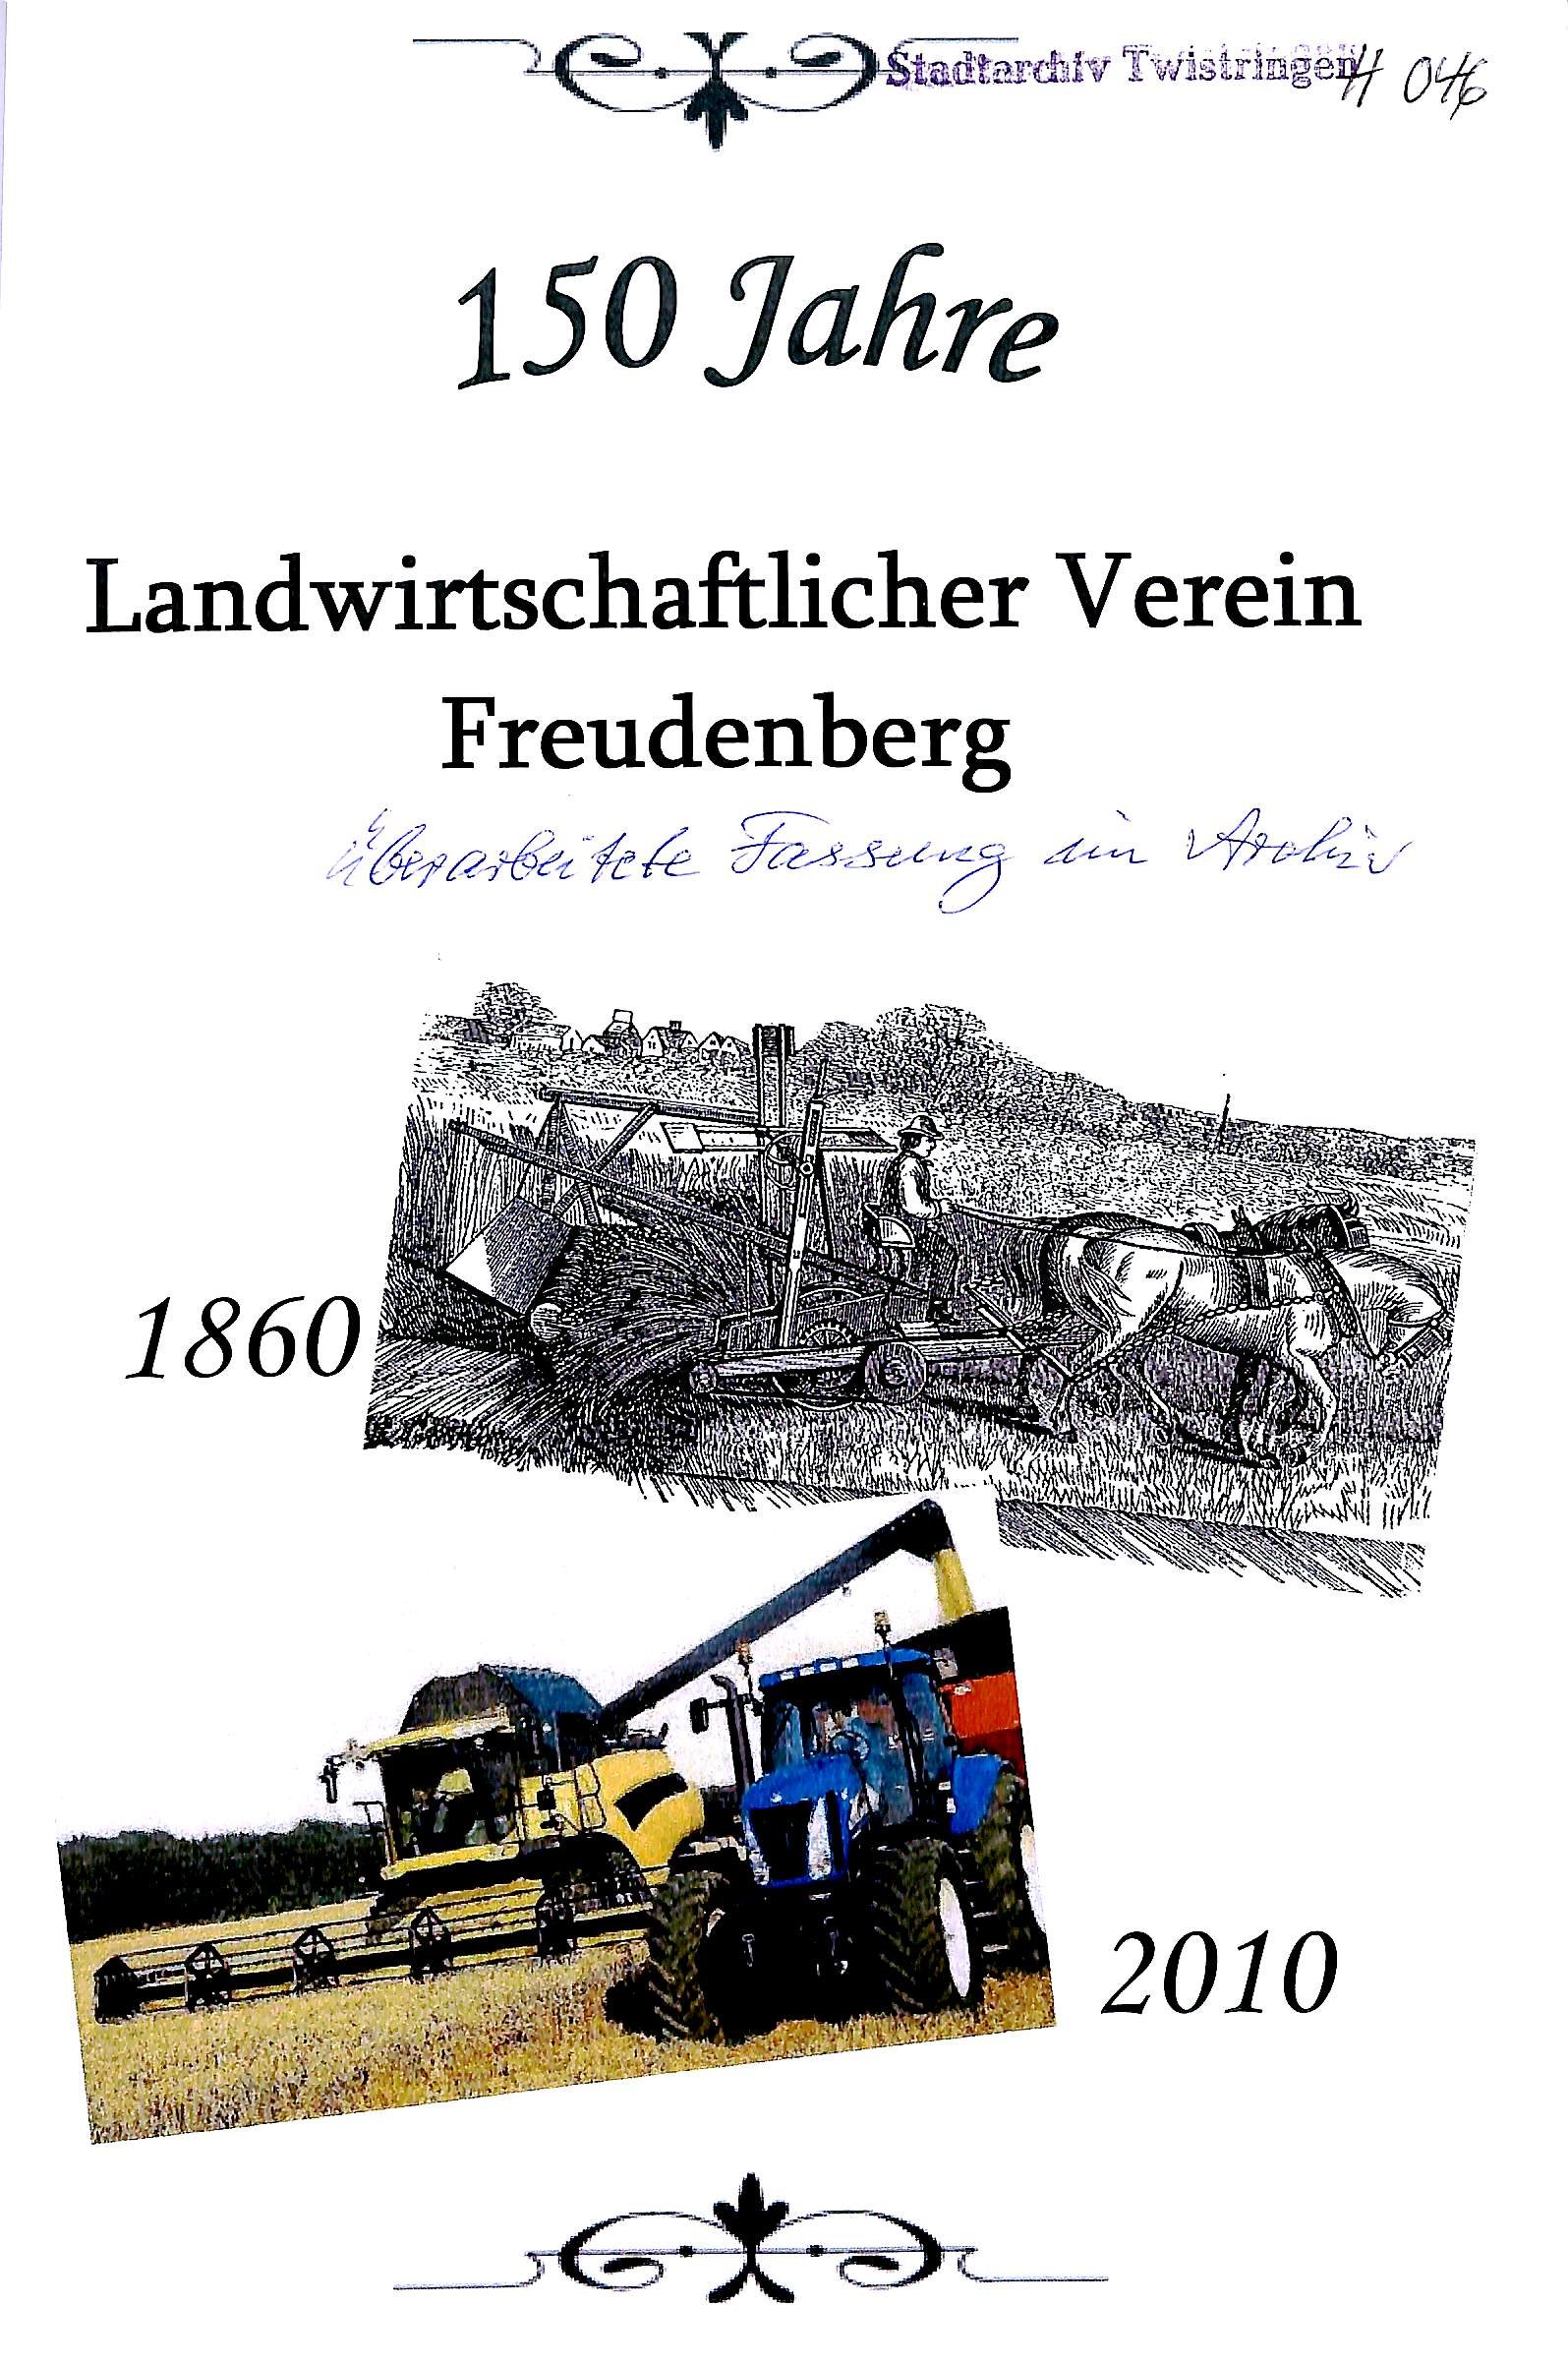 Landwirtschaftlicher Verein Freudenberg (Kreismuseum Syke CC BY-NC-SA)